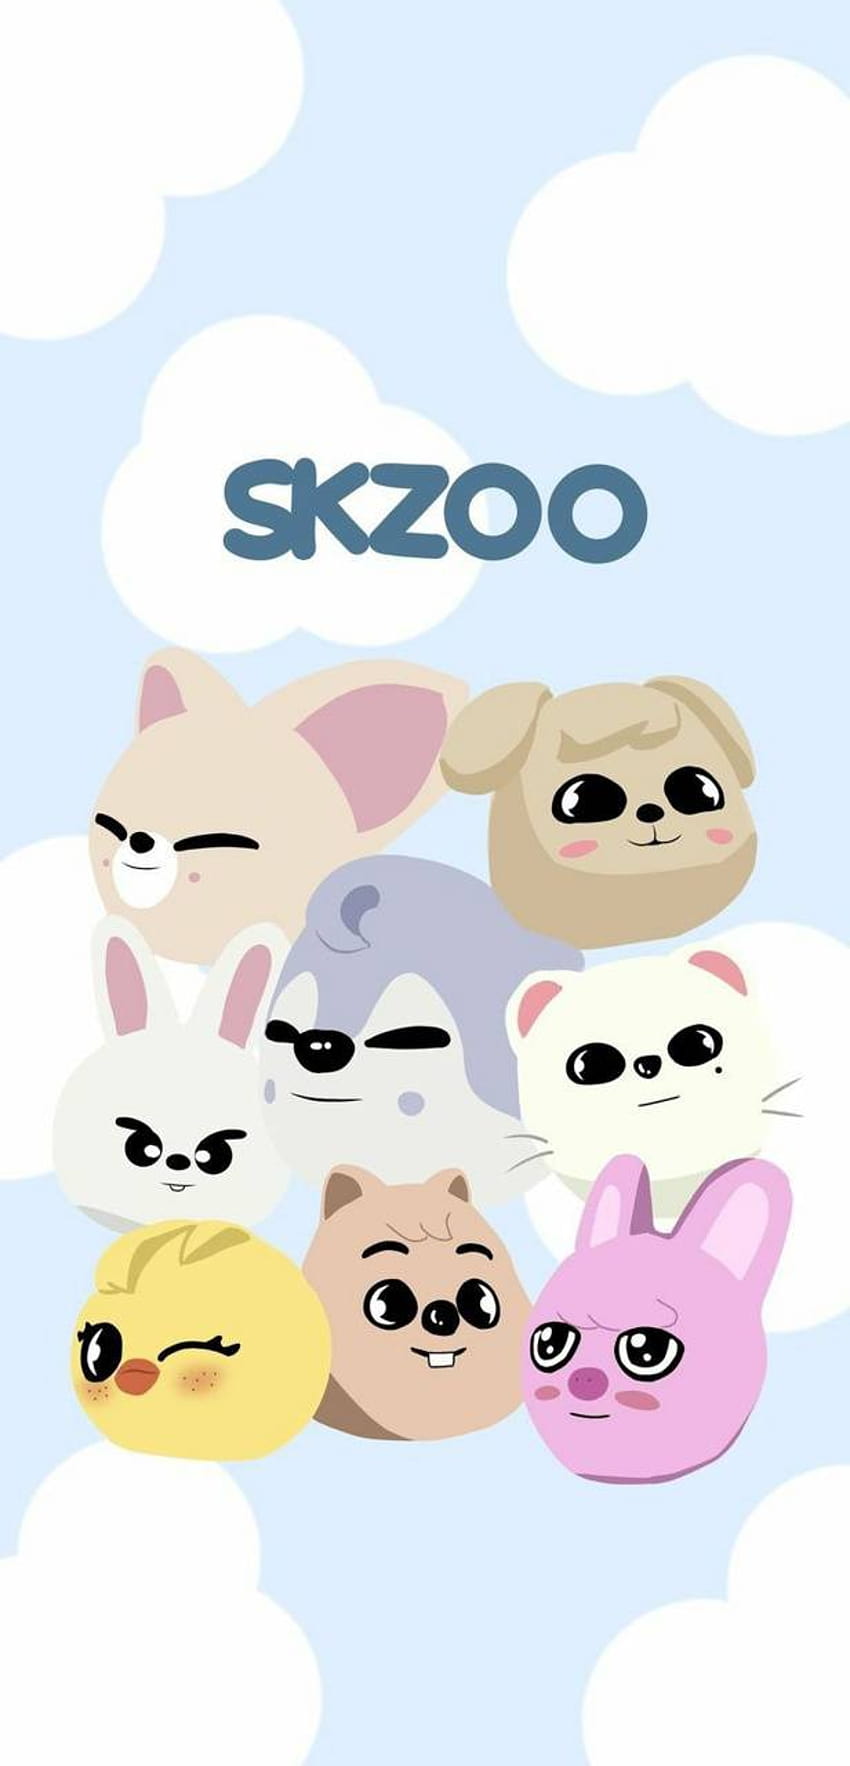 Samandcat tarafından Skzoo HD telefon duvar kağıdı